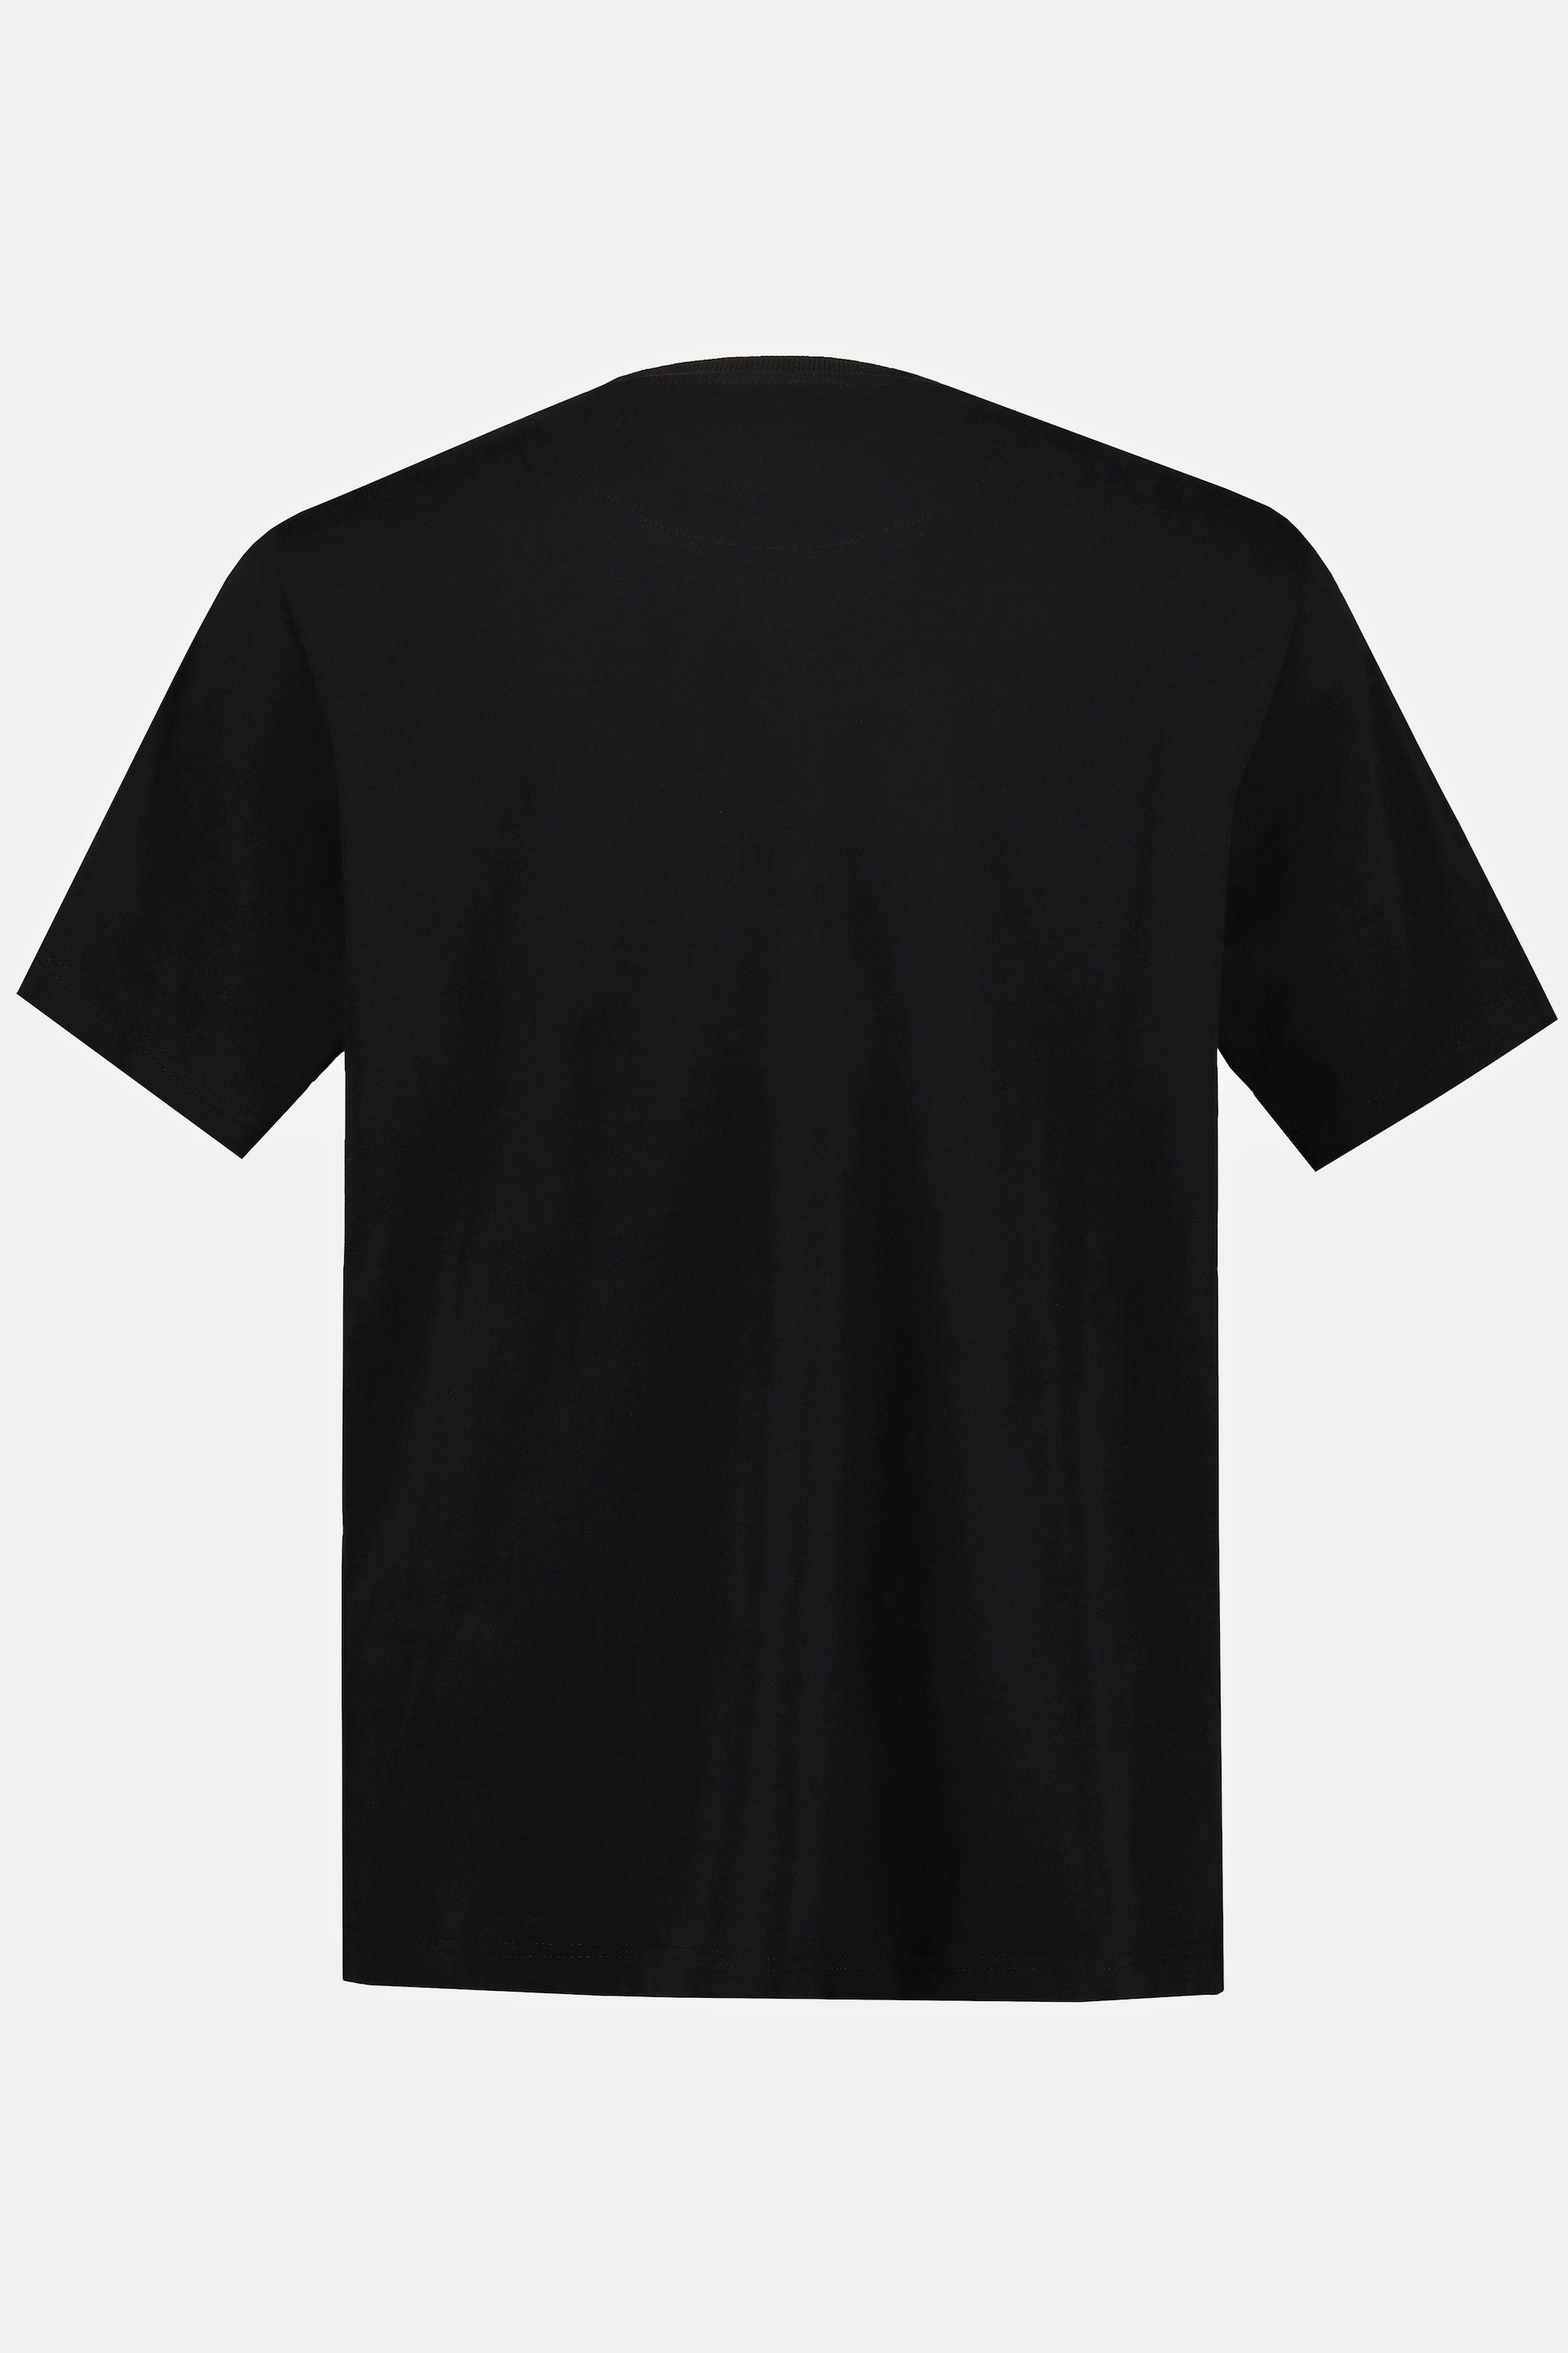 Herren Shirts JP1880 Rundhalsshirt T-Shirt Bandshirt Iron Maiden Halbarm bis 8 XL